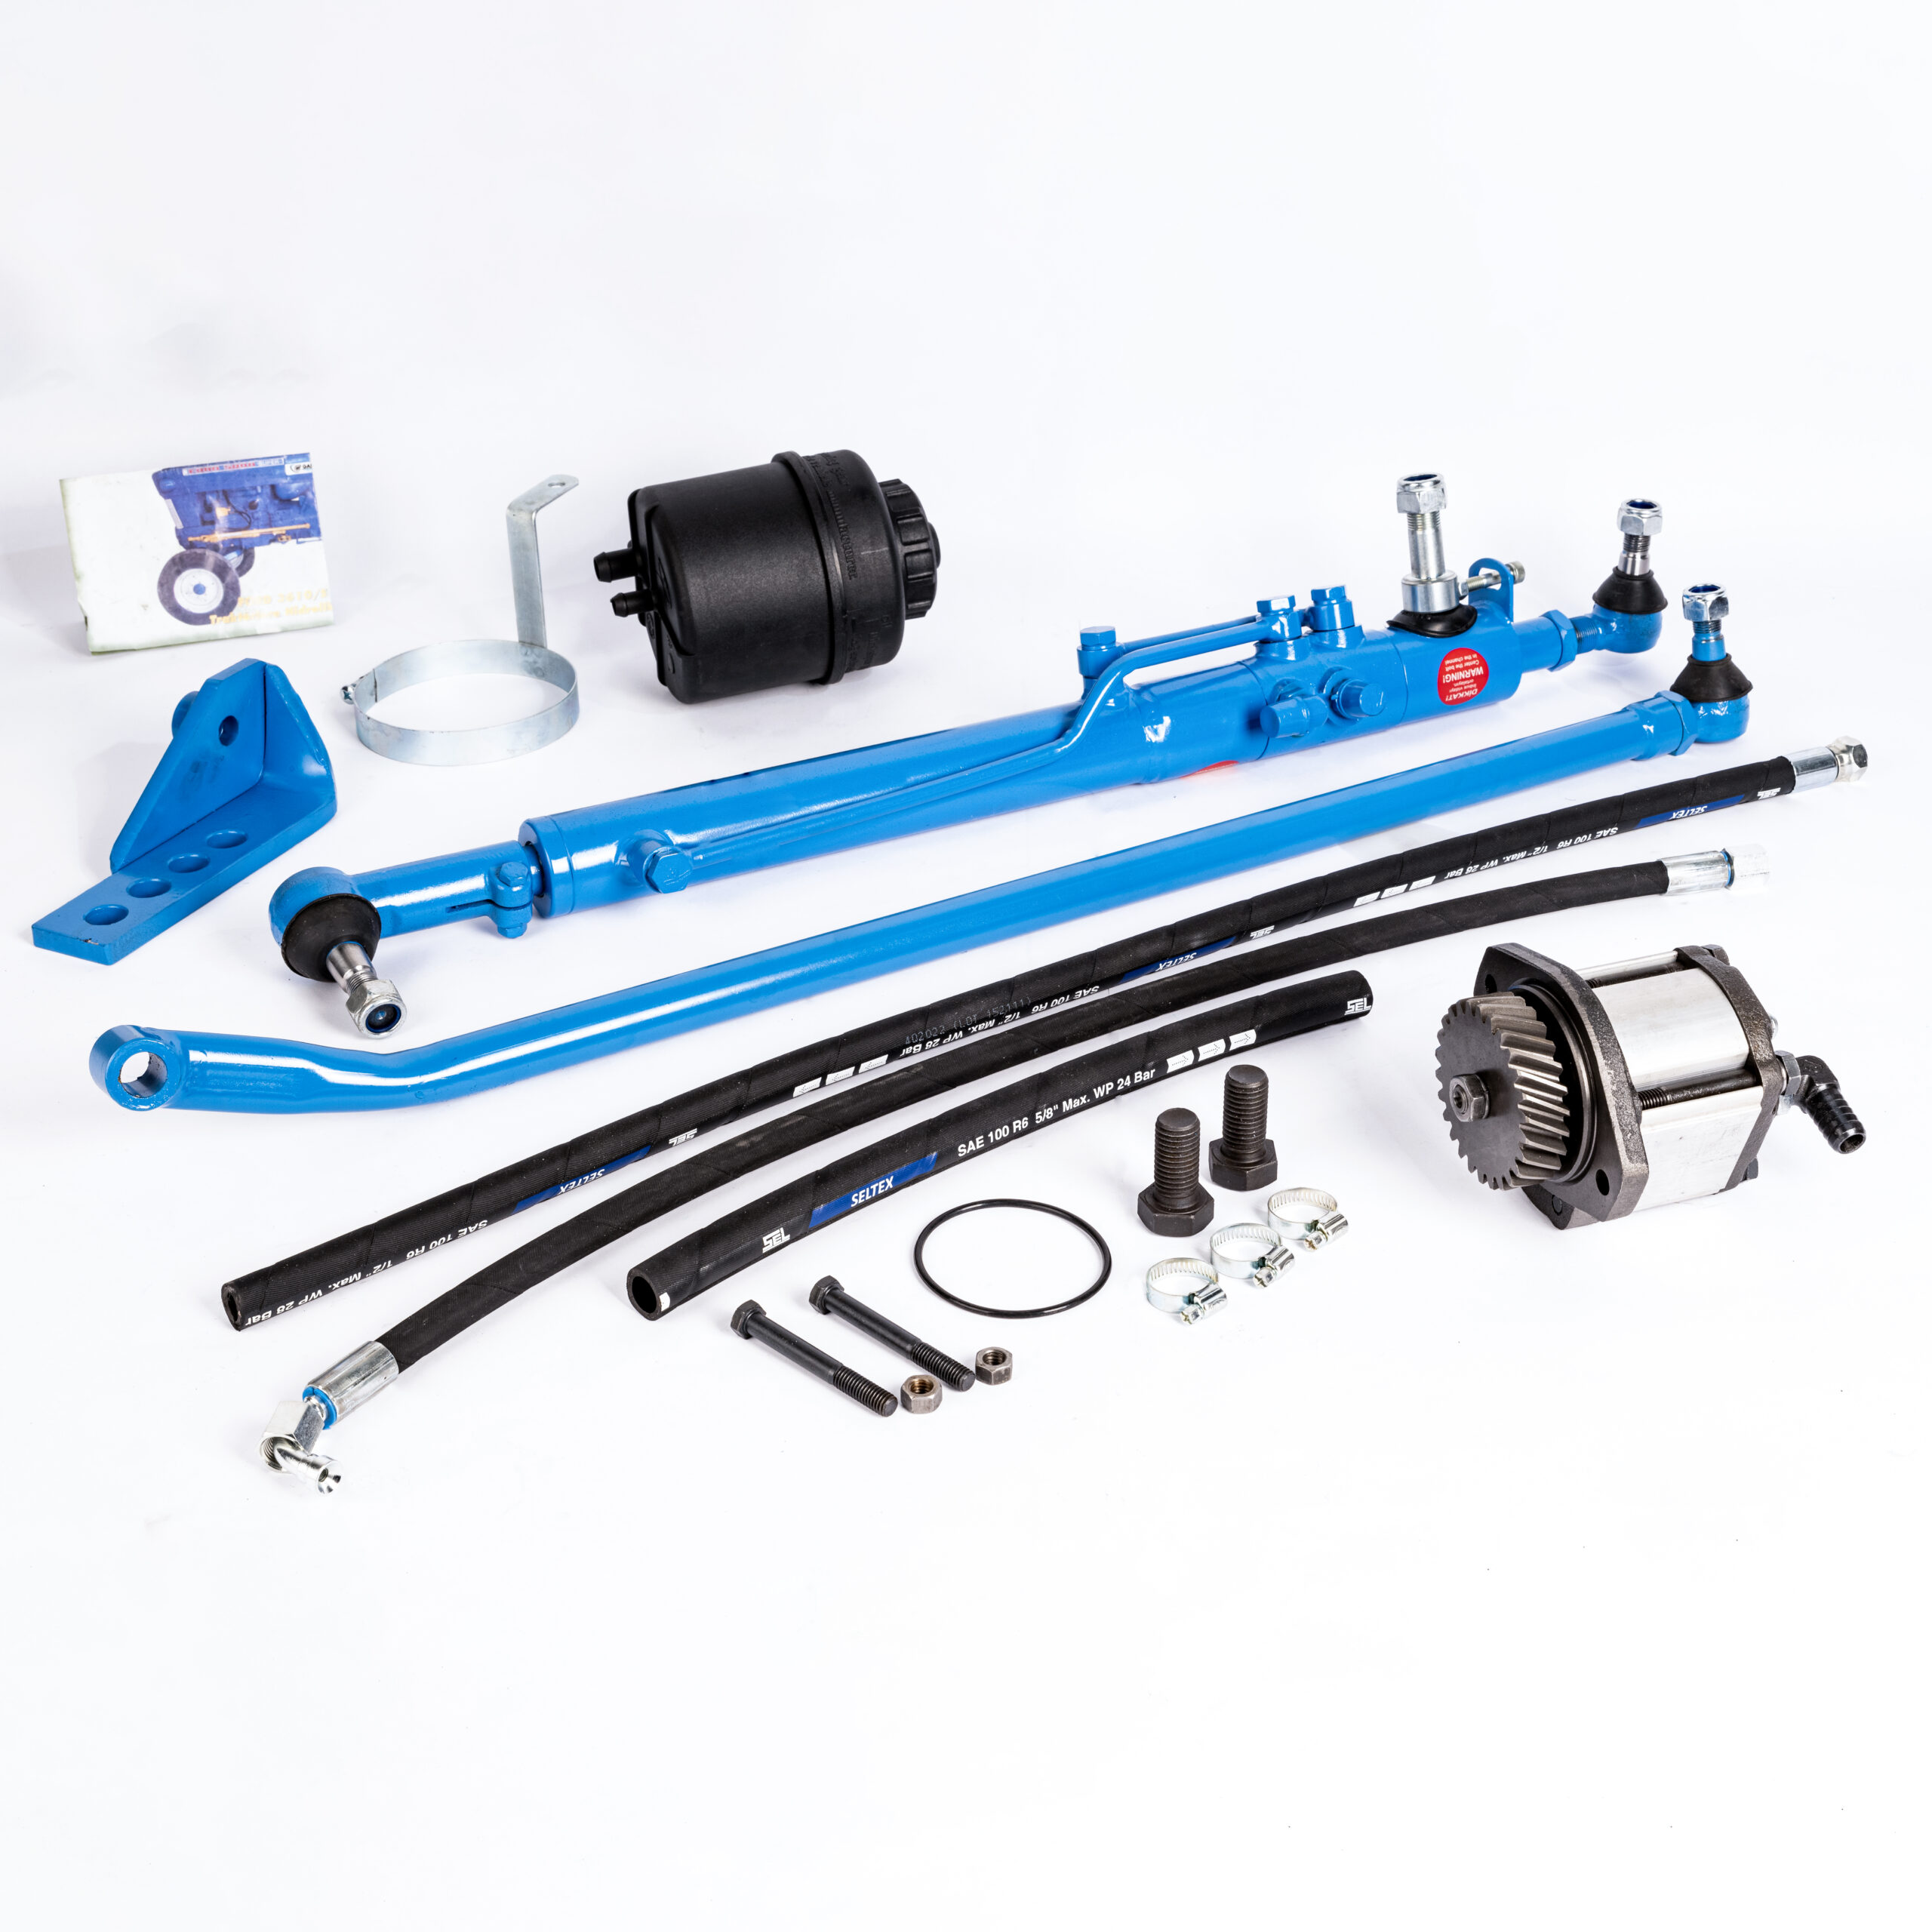 Power Steering Kit for Ford 4000 4600